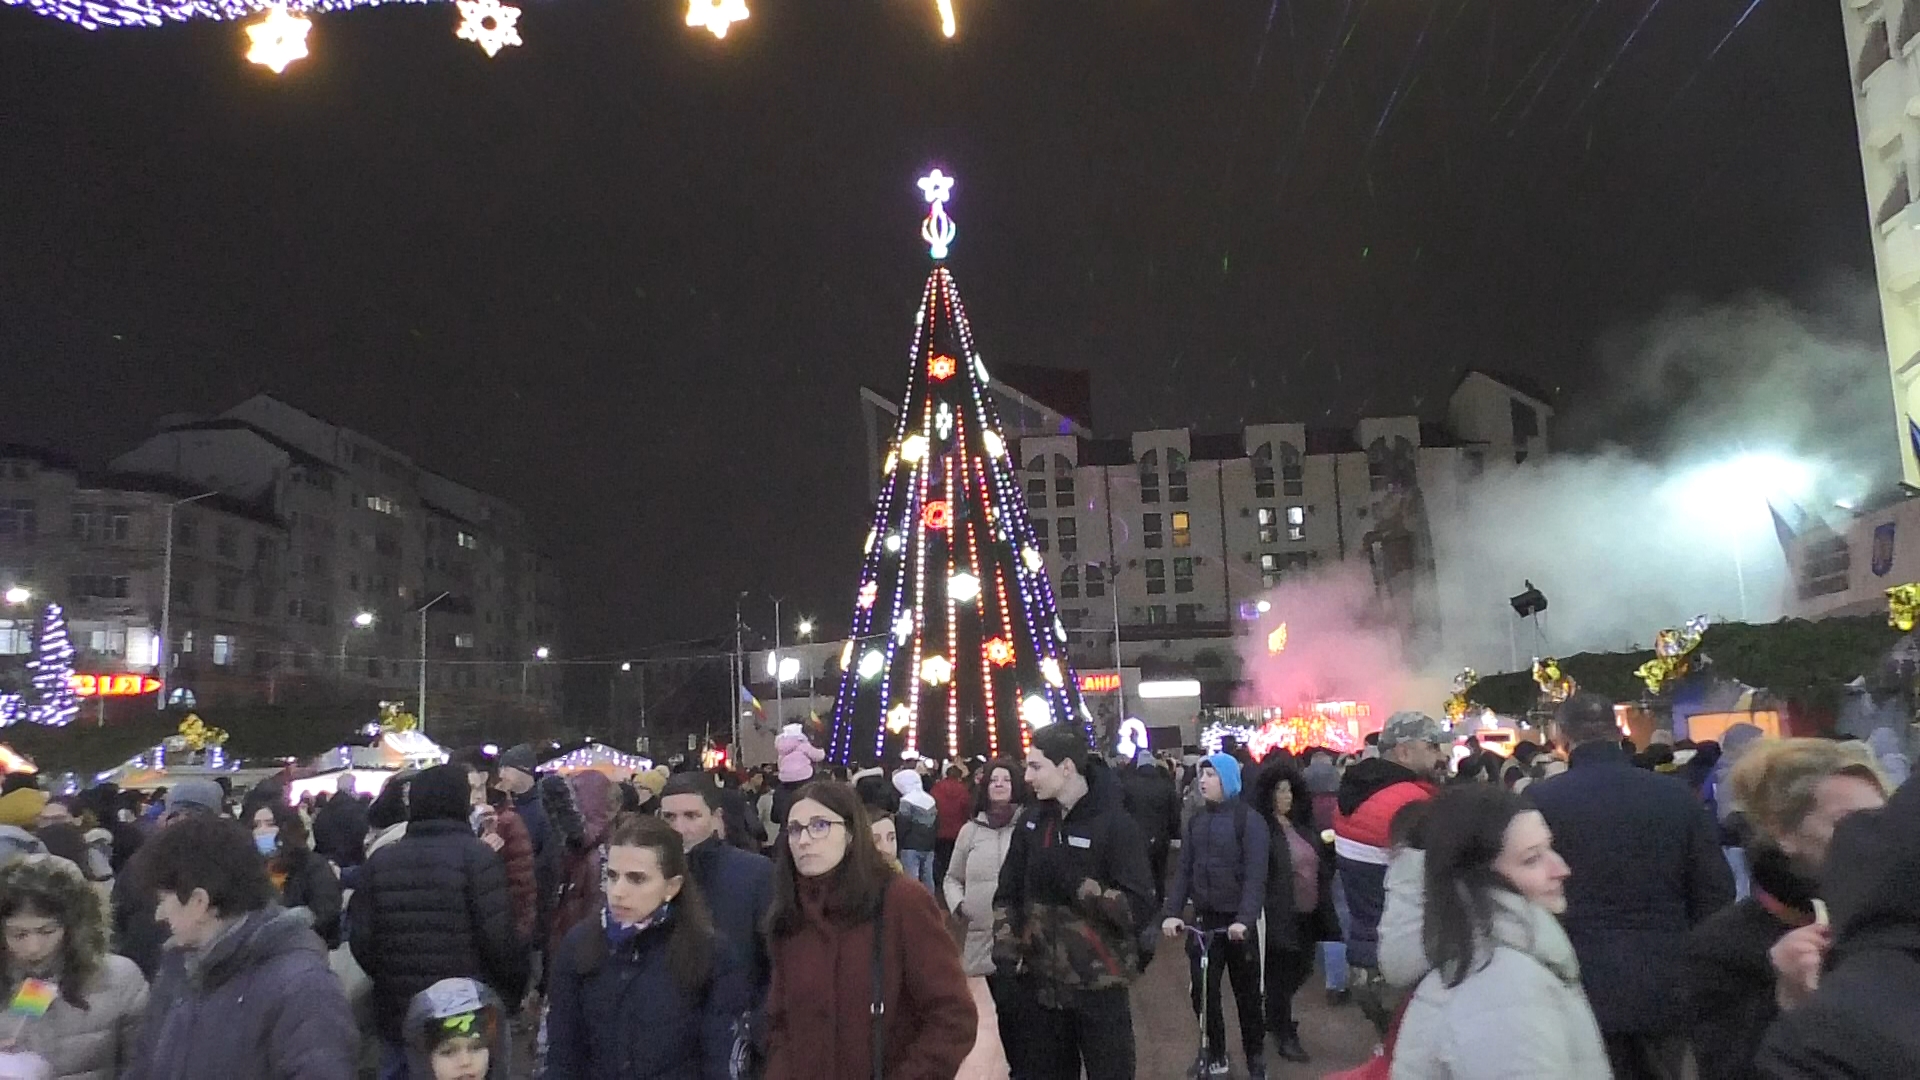 Municipiul Târgoviște în haine de sărbătoare, lasere, 120 de drone și un adevărat spectacol de sunet și lumini la aprinderea iluminatului festiv